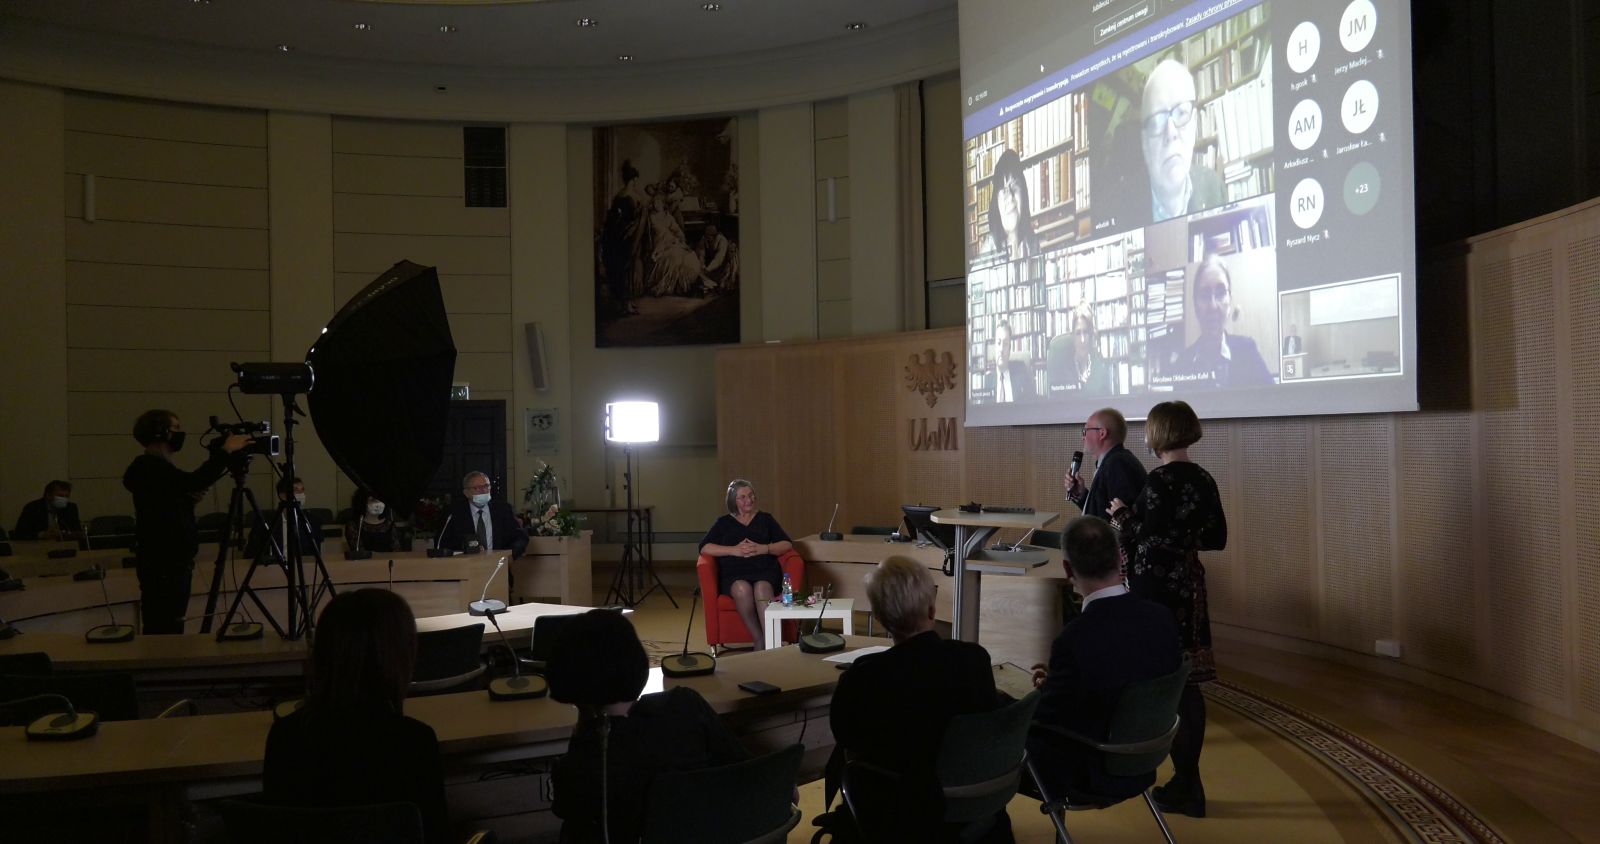 Rzut ogólny na Salon Mickiewicza - widać ekran, na którym widać twarze gości uczestniczących zdalnie, przy pulpicie stoi prof. Wojciech Otto i przemawia, widać również kamerzystę, oświetlenie i część publiki.